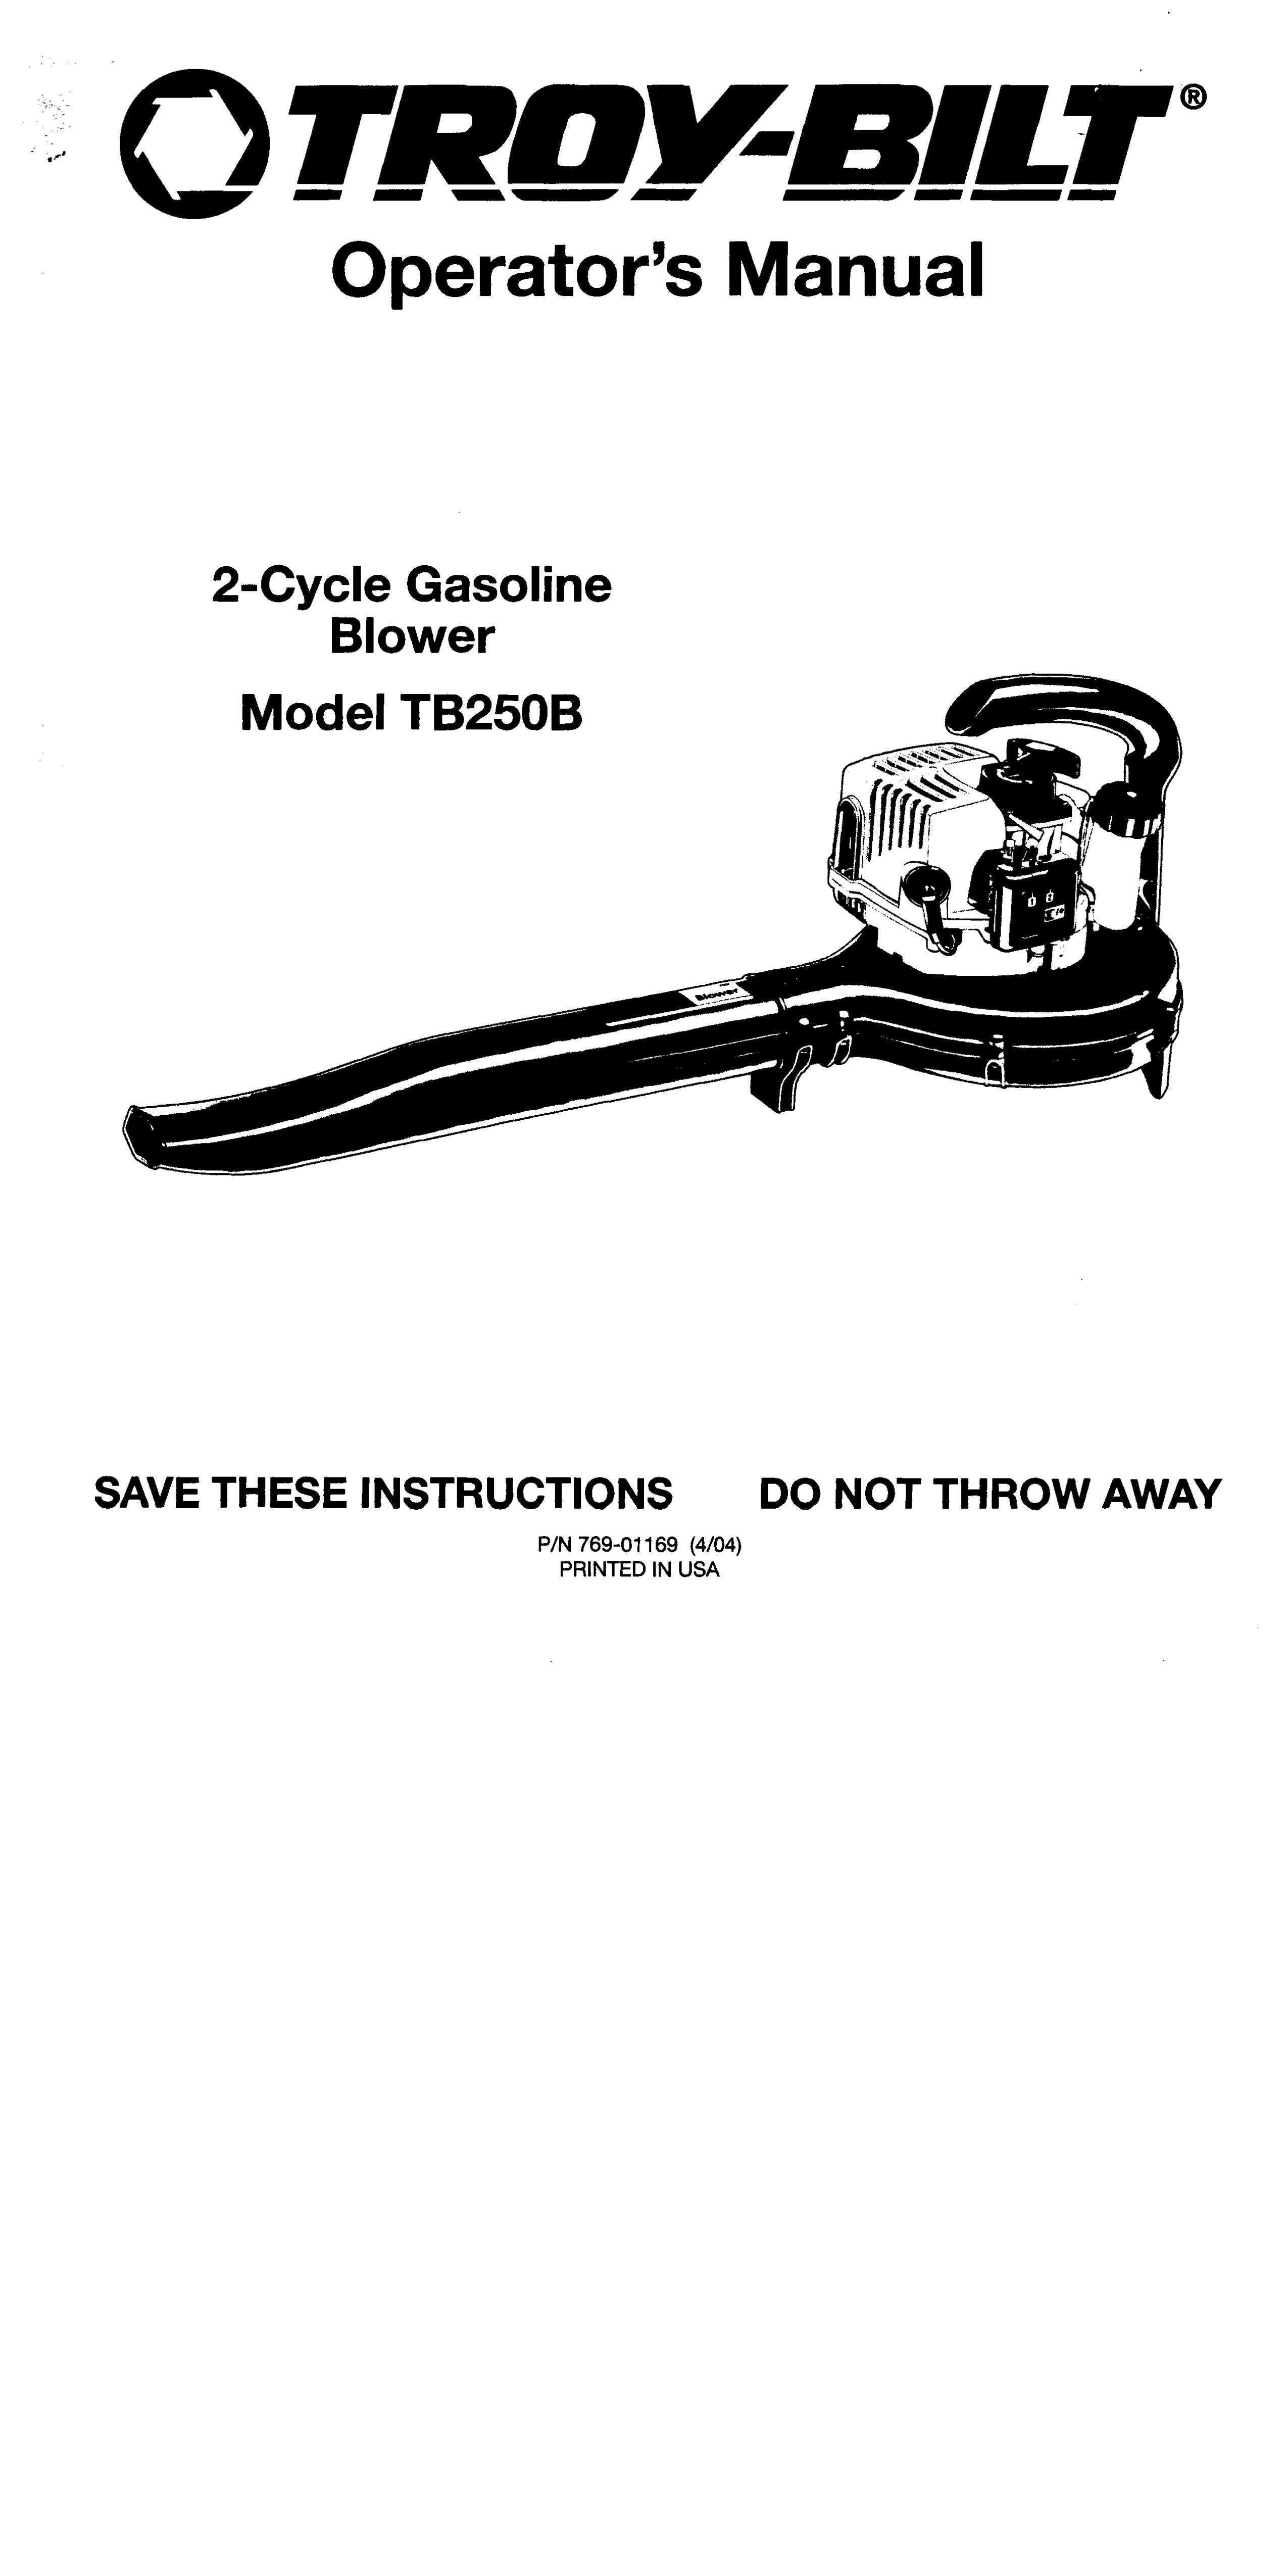 Troy-Bilt TB250B Blower User Manual